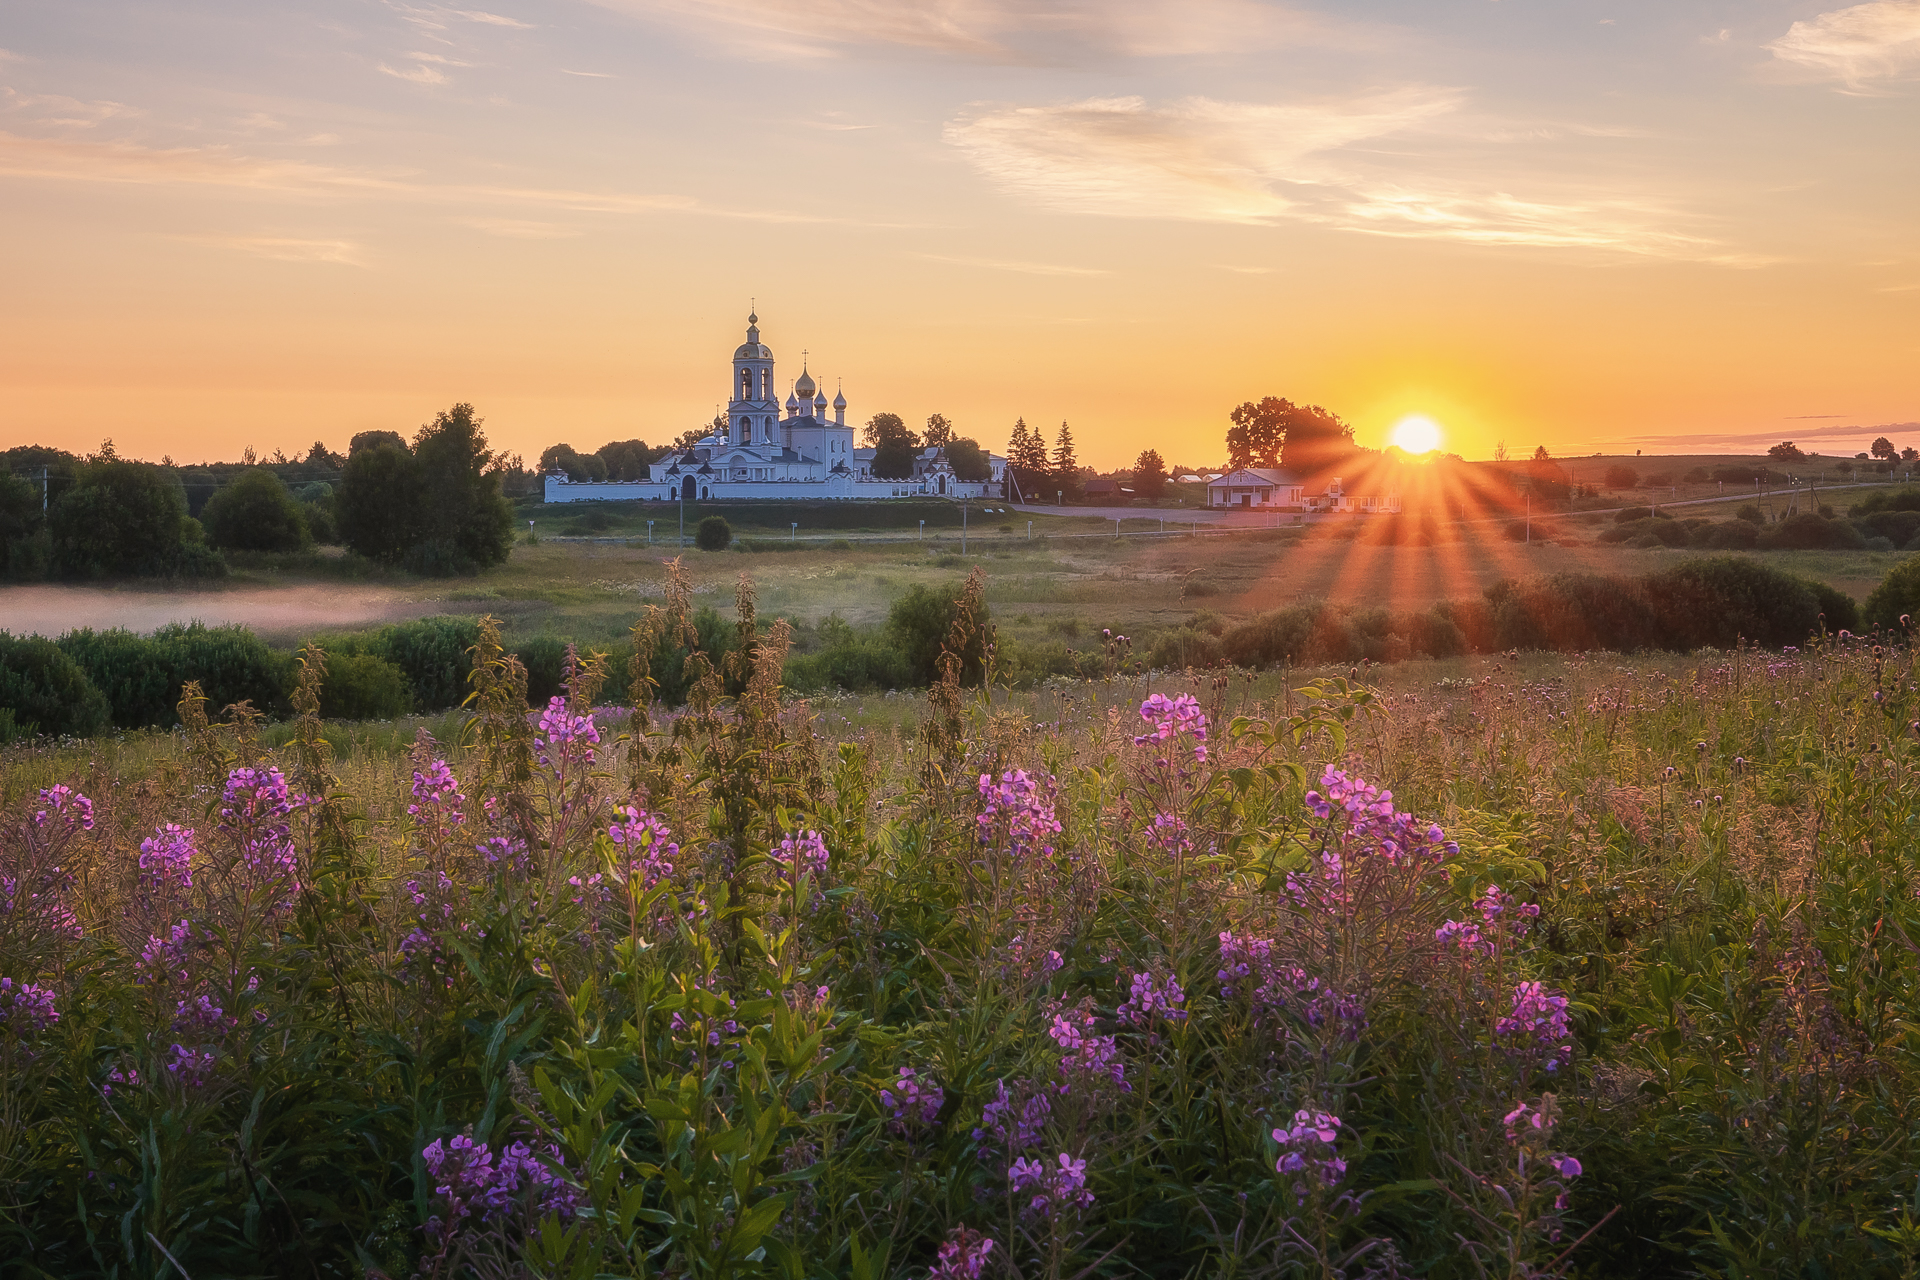 монастырь храм пейзаж рассвет иван-чай утро церковь солнце, Anya Yukhova